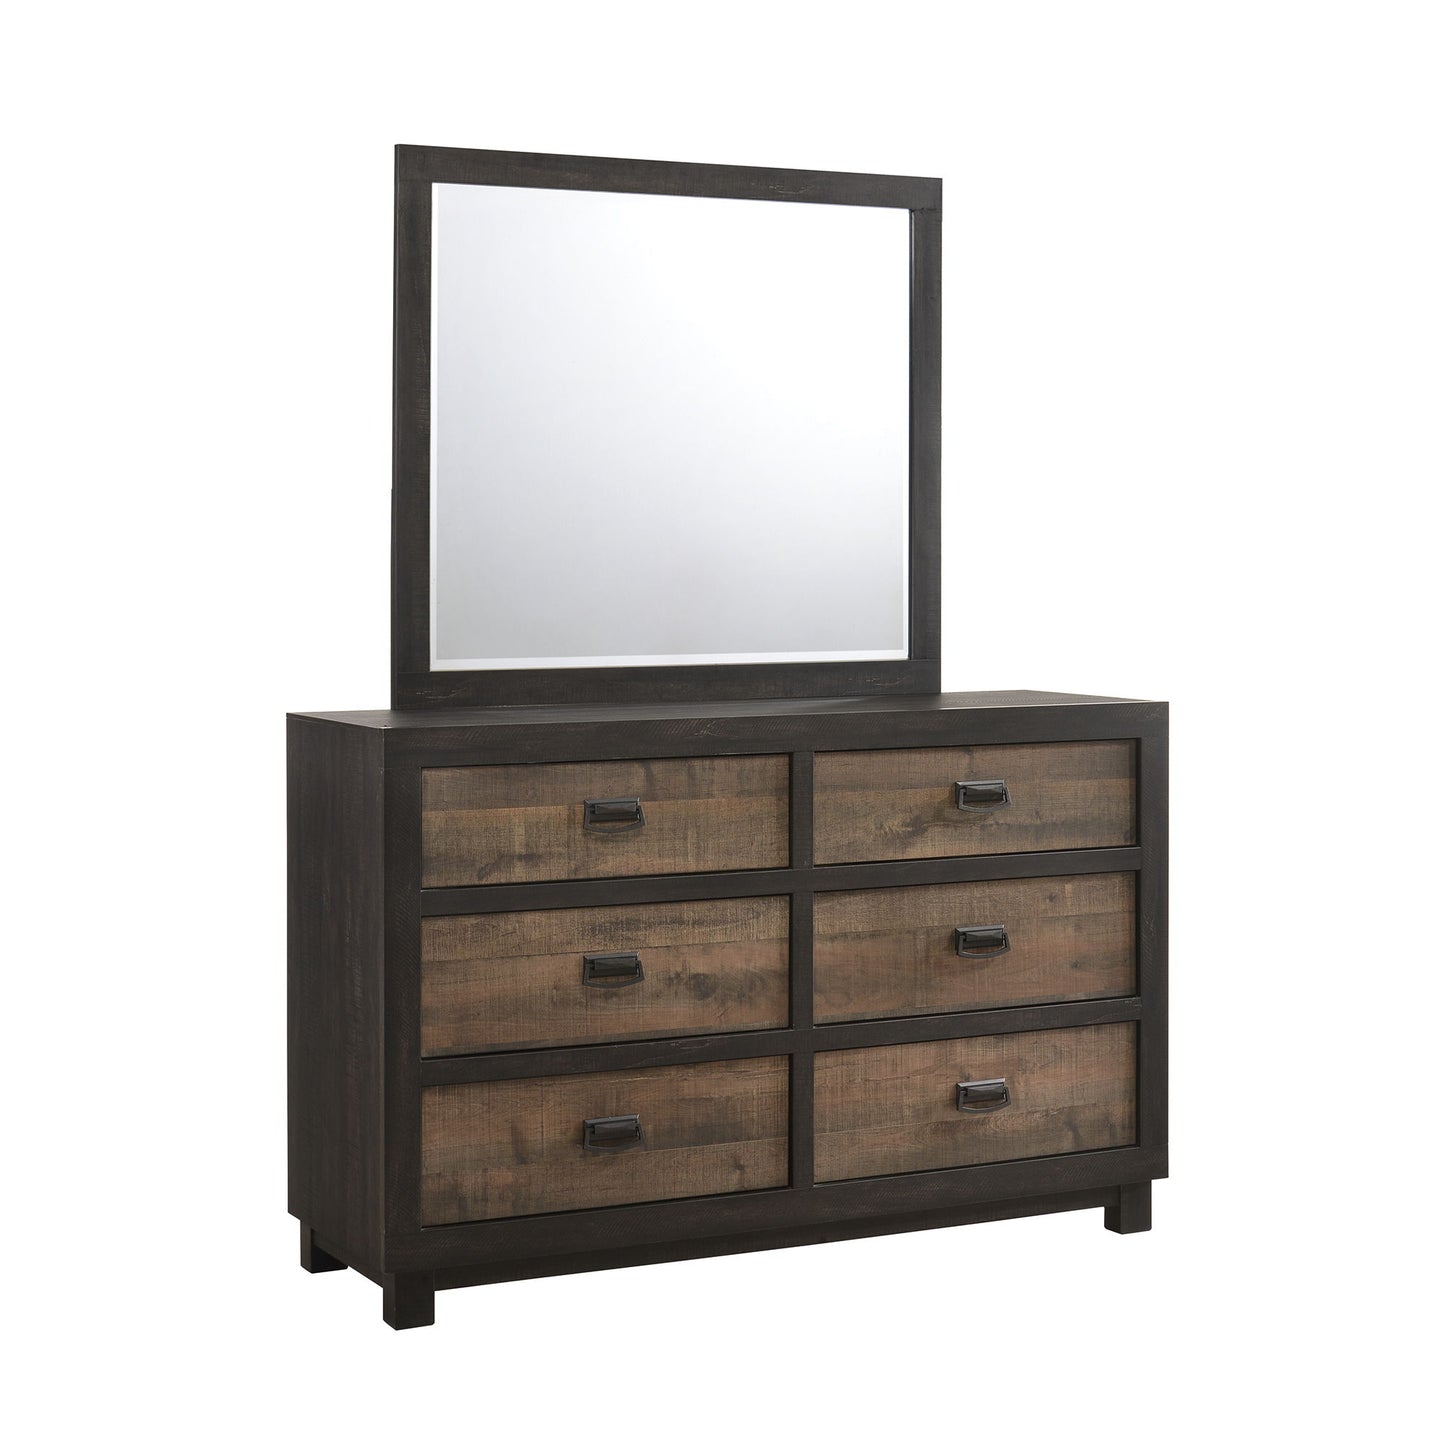 Harlington - 6-Drawer Dresser With Mirror Set - Dark Chocolate